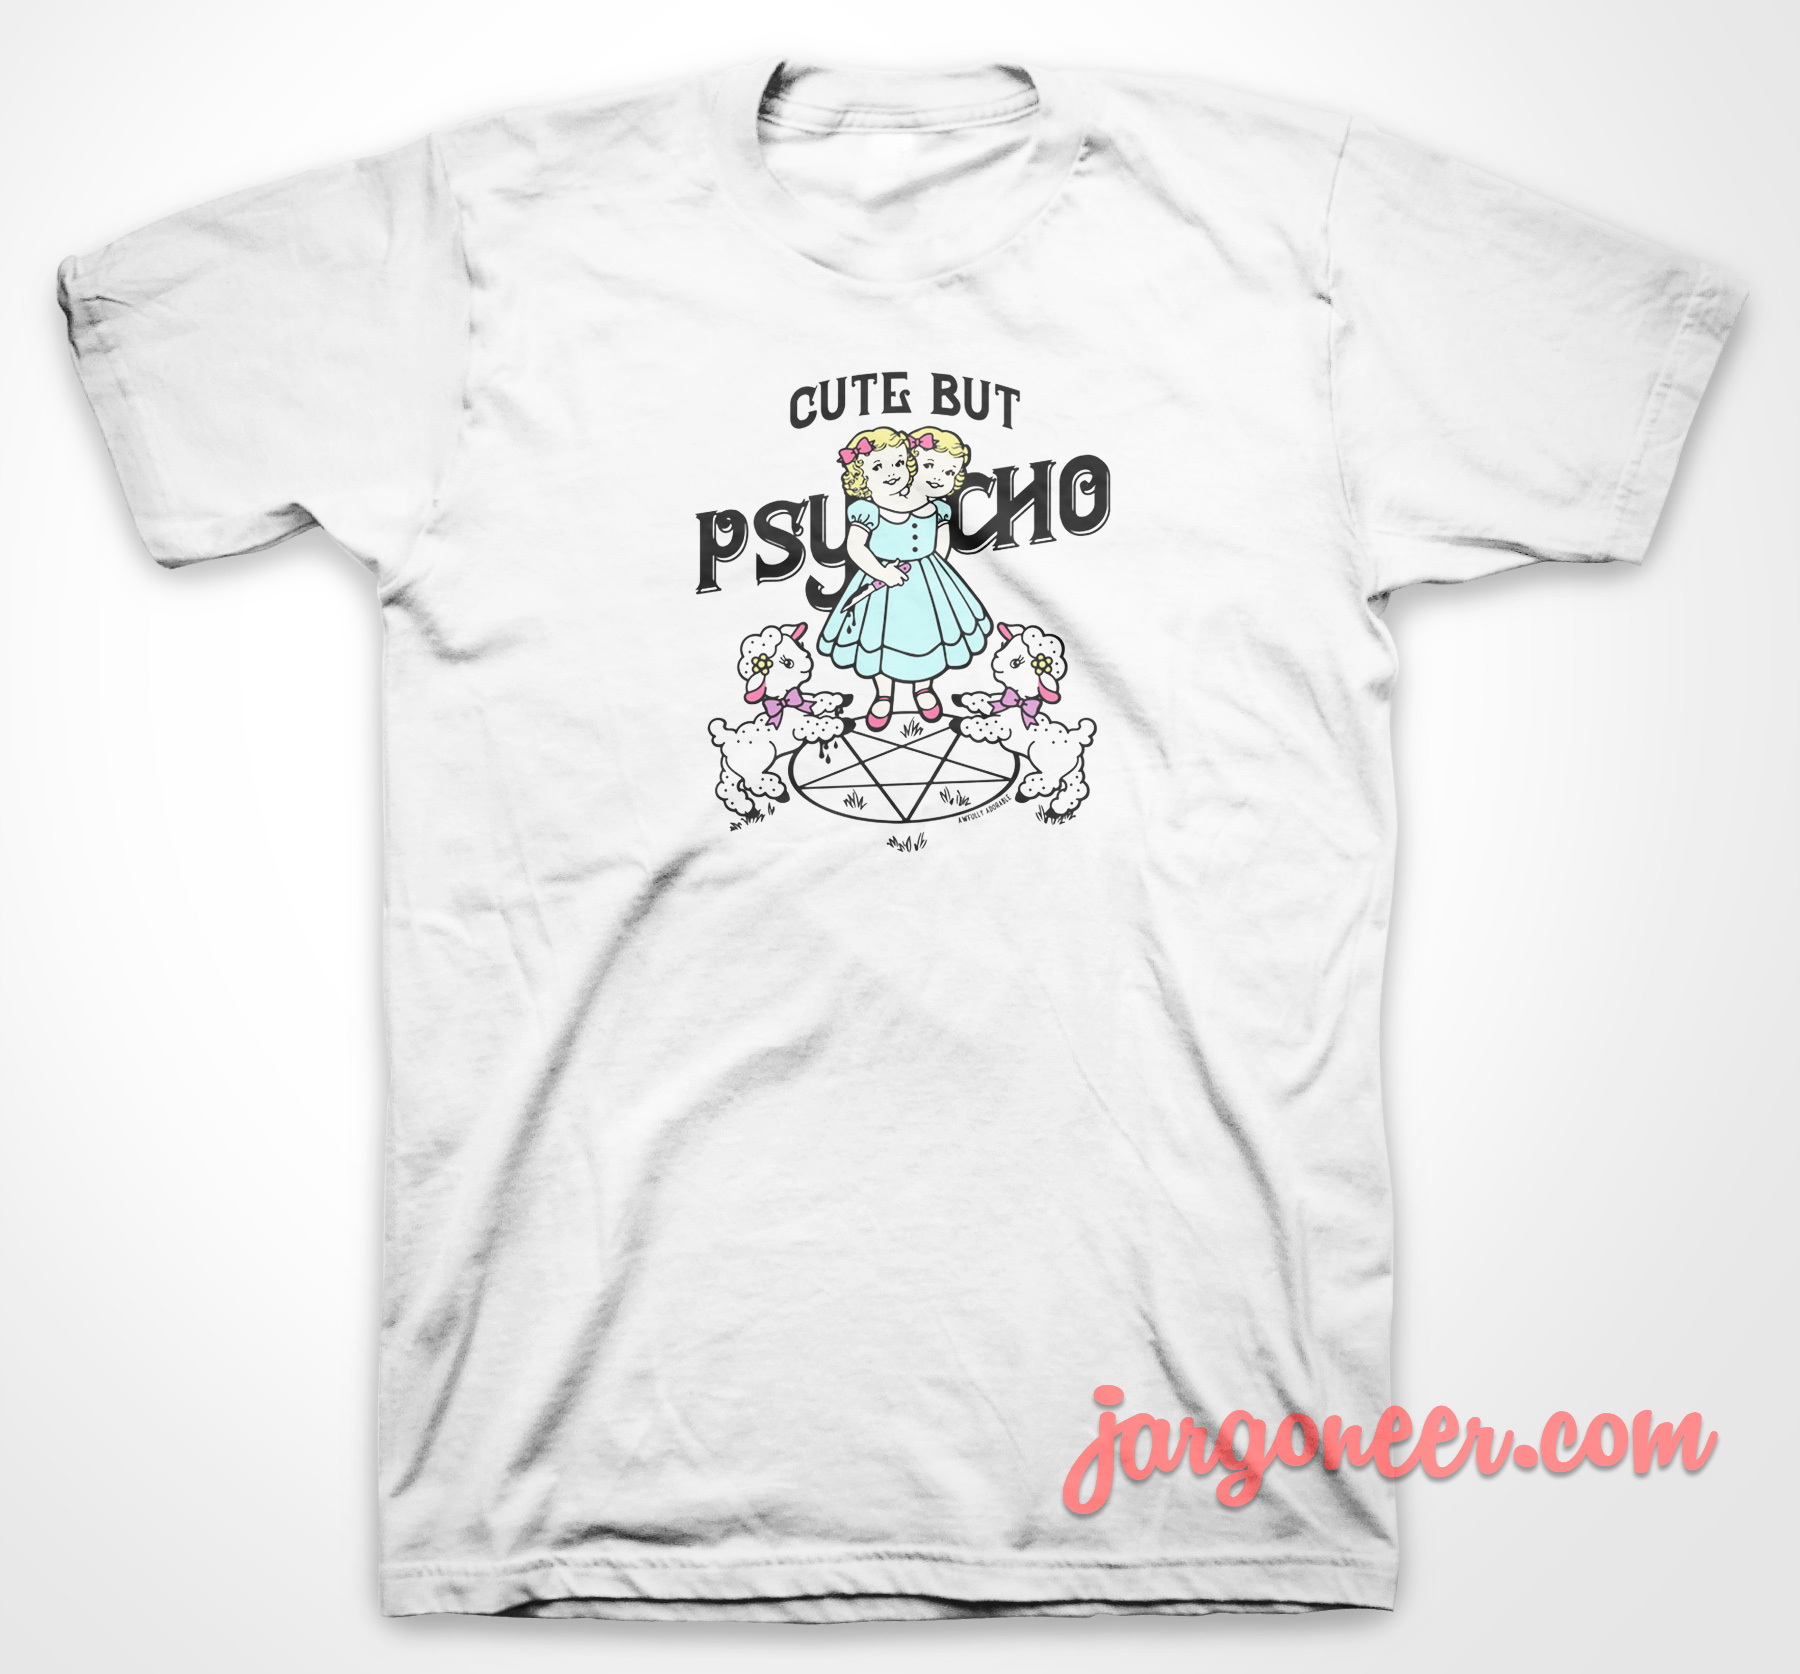 Cute Psycho - Shop Unique Graphic Cool Shirt Designs